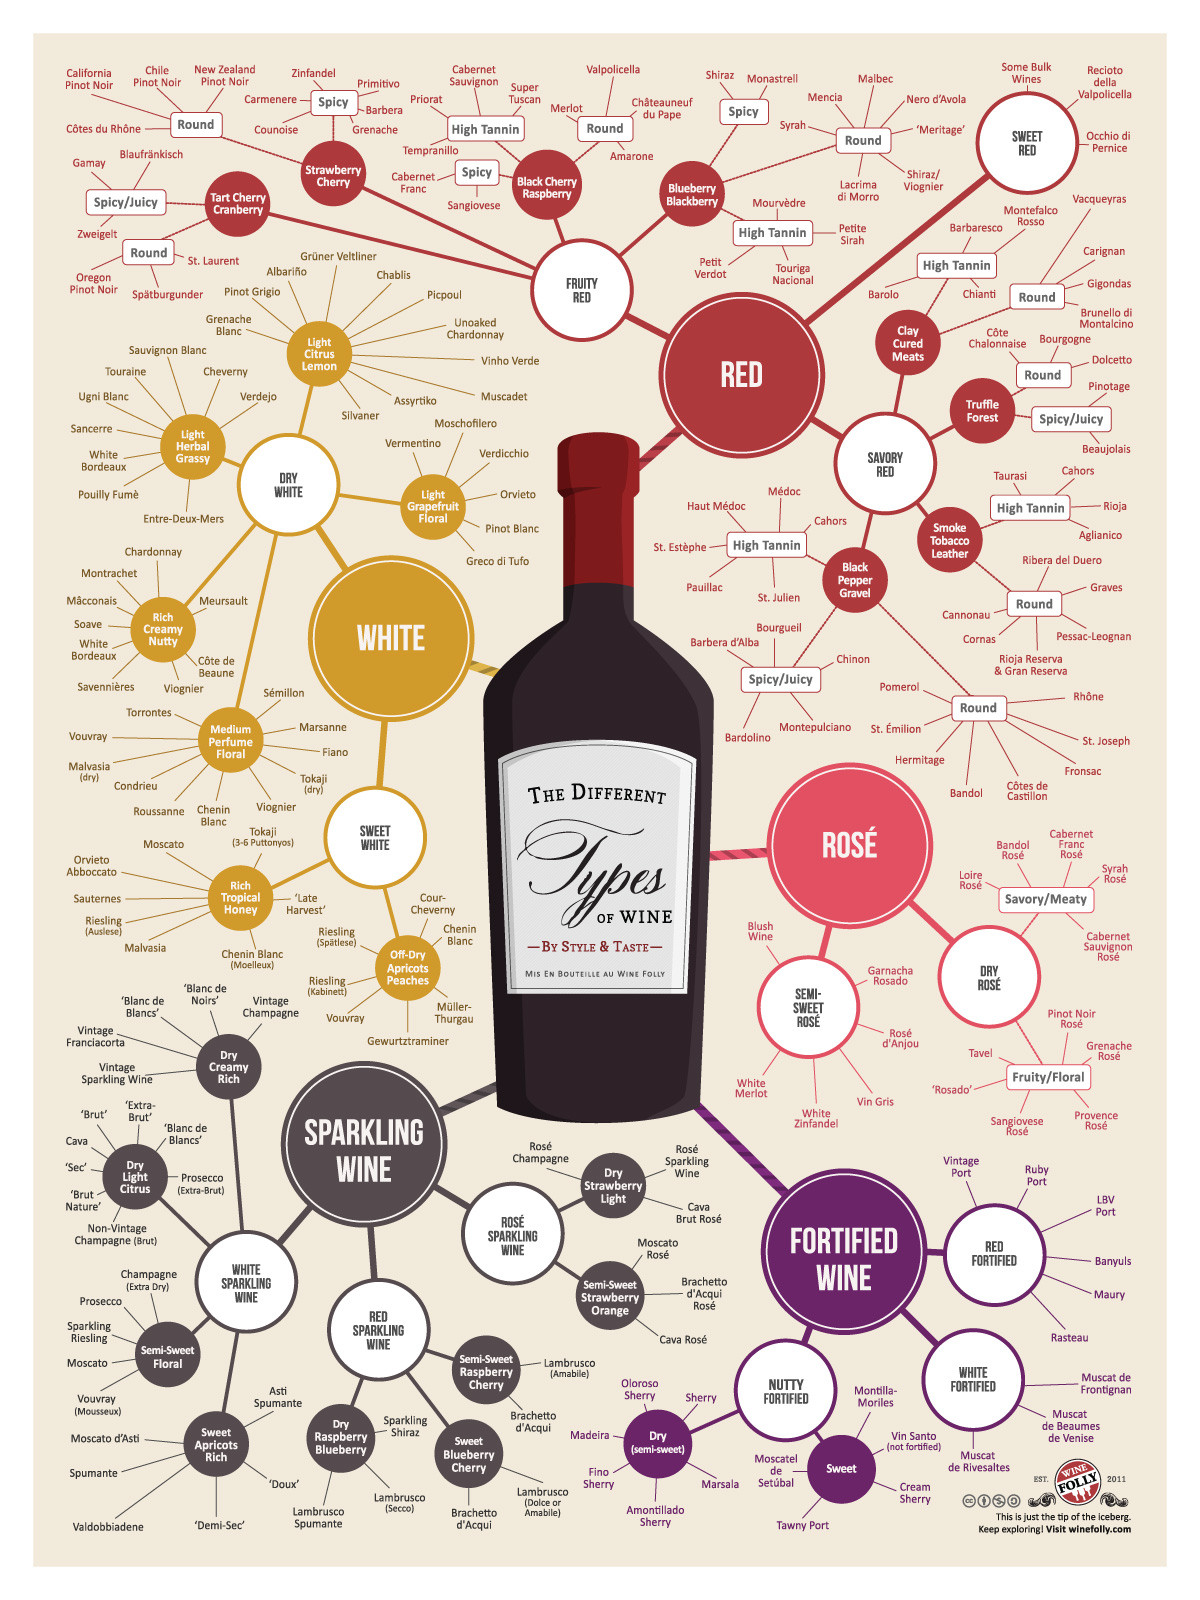 TYWKIWDBI ("Tai-Wiki-Widbee"): Wine chart